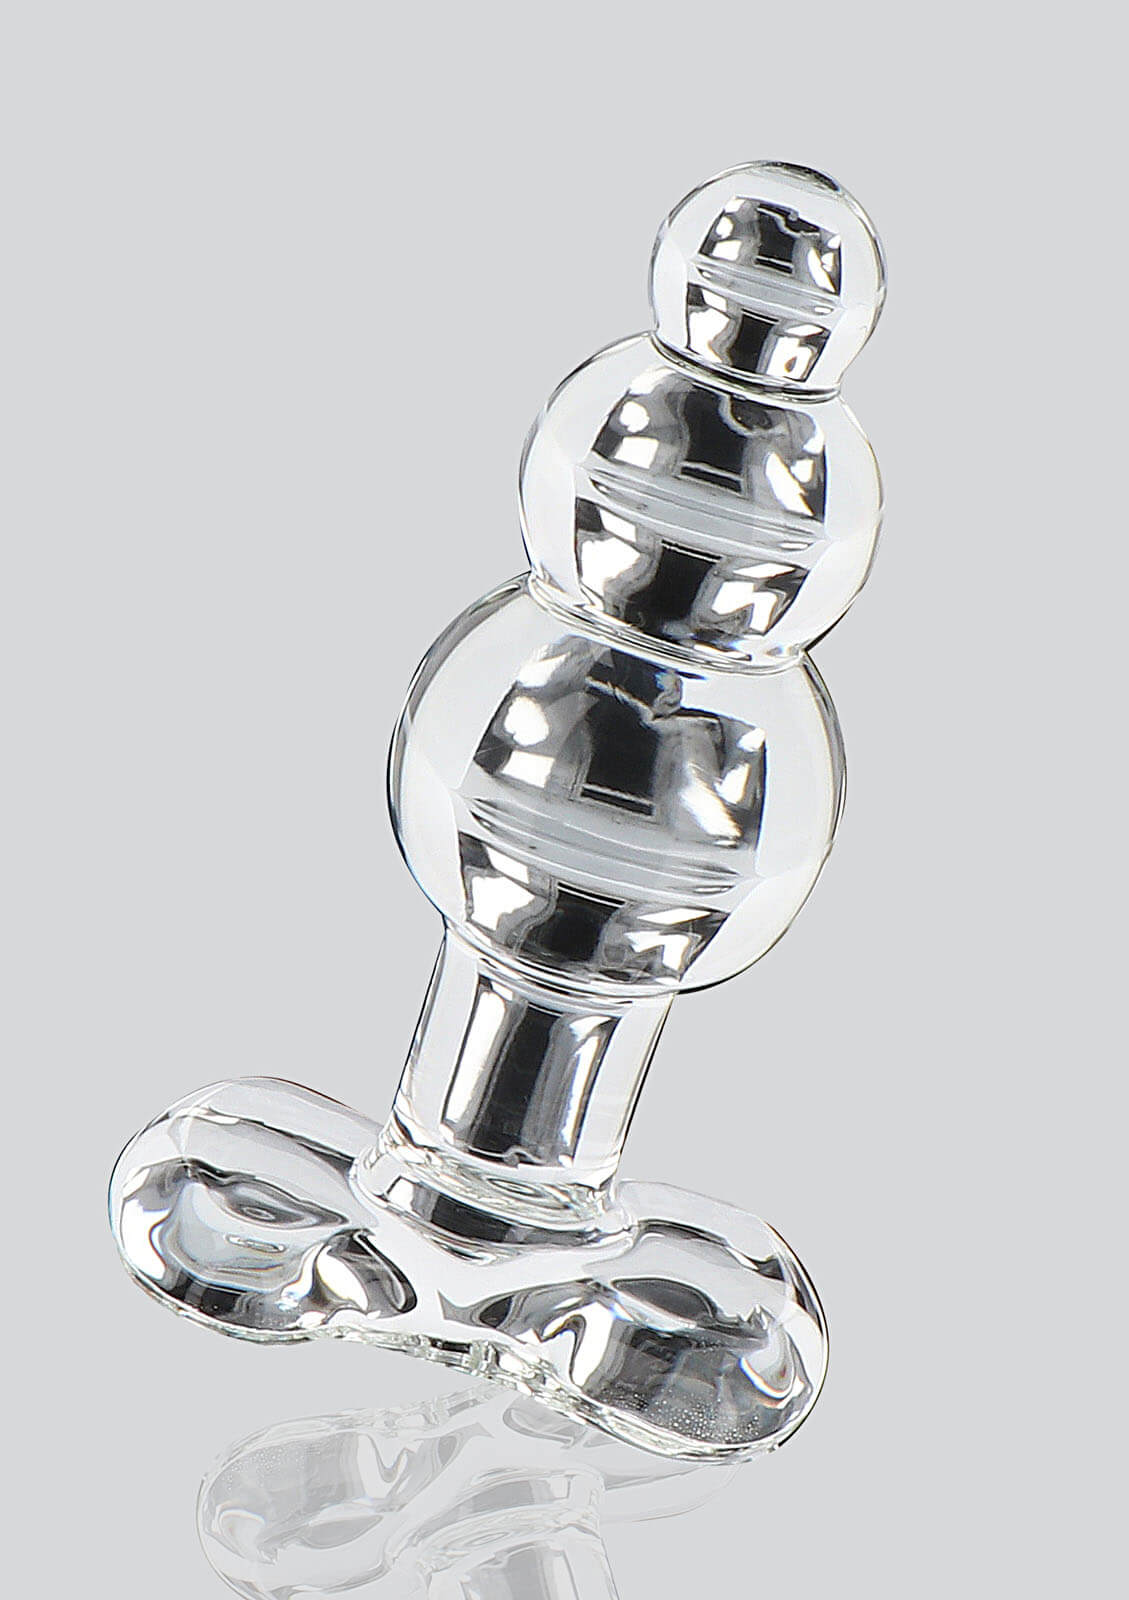 ToyJoy Glass Worxx Crystal Jewel (11 cm)